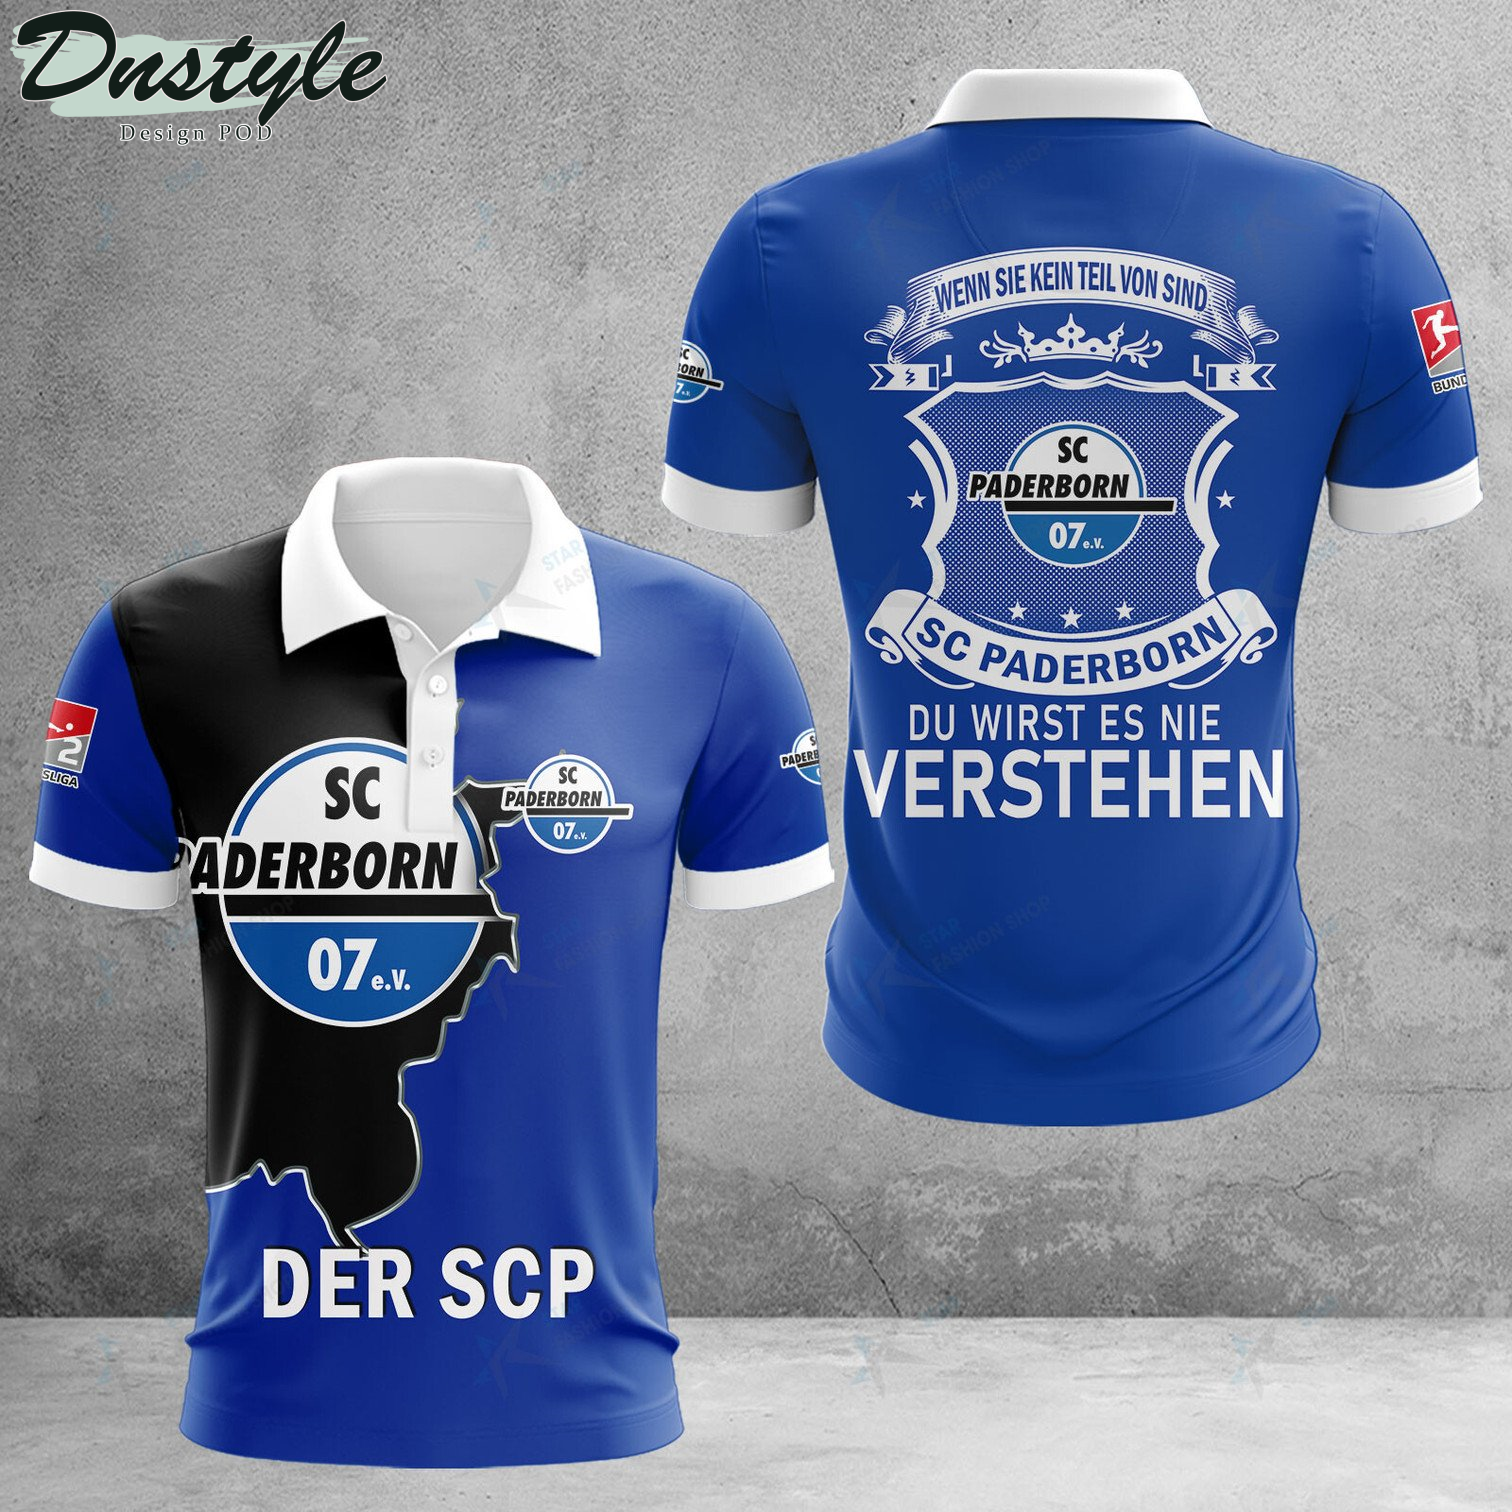 SC Paderborn wenn sie kein teil von sind du wirst es nie verstehen Polo Hemd